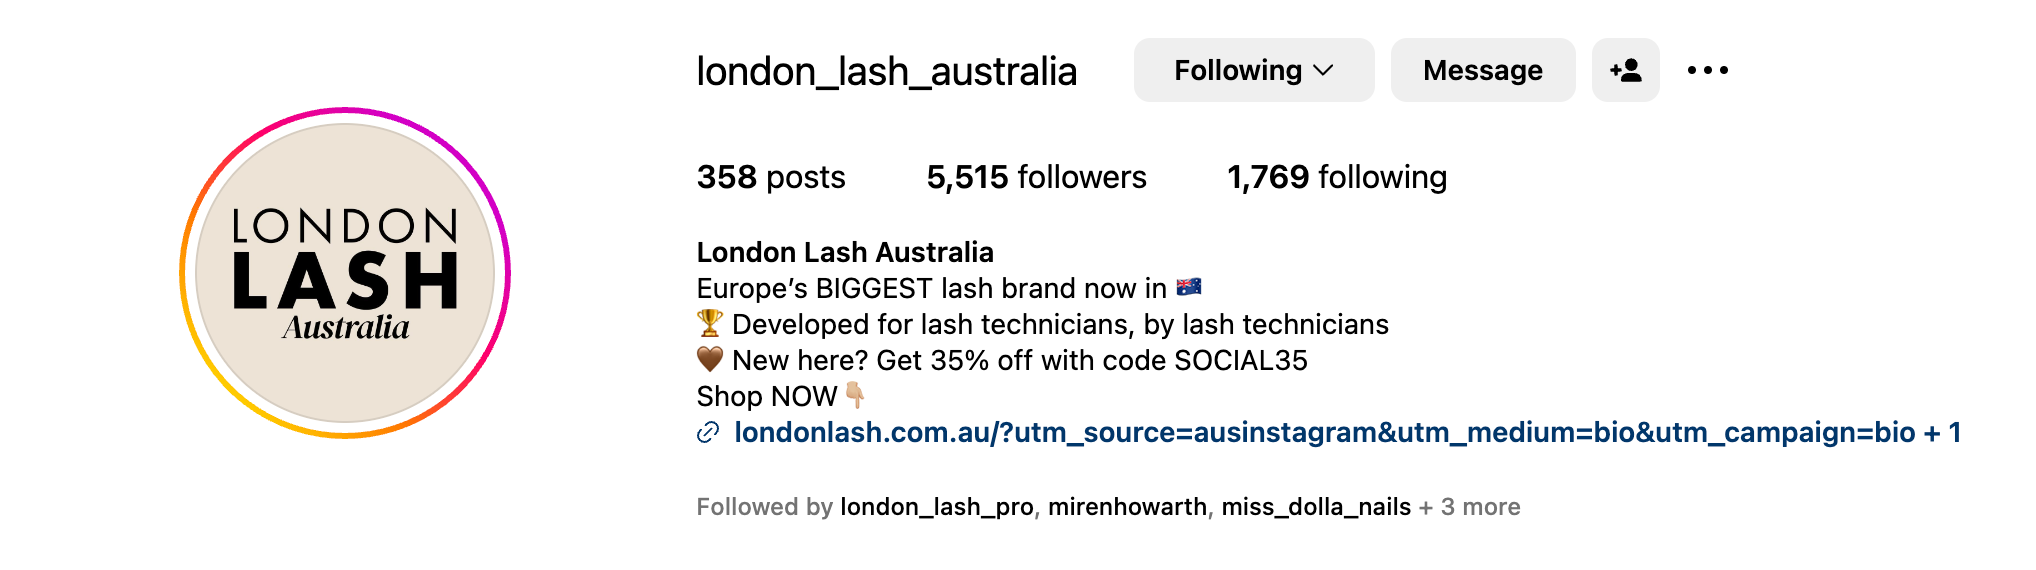 London Lash Instagram IG london_lash_australia | London Lash Australia